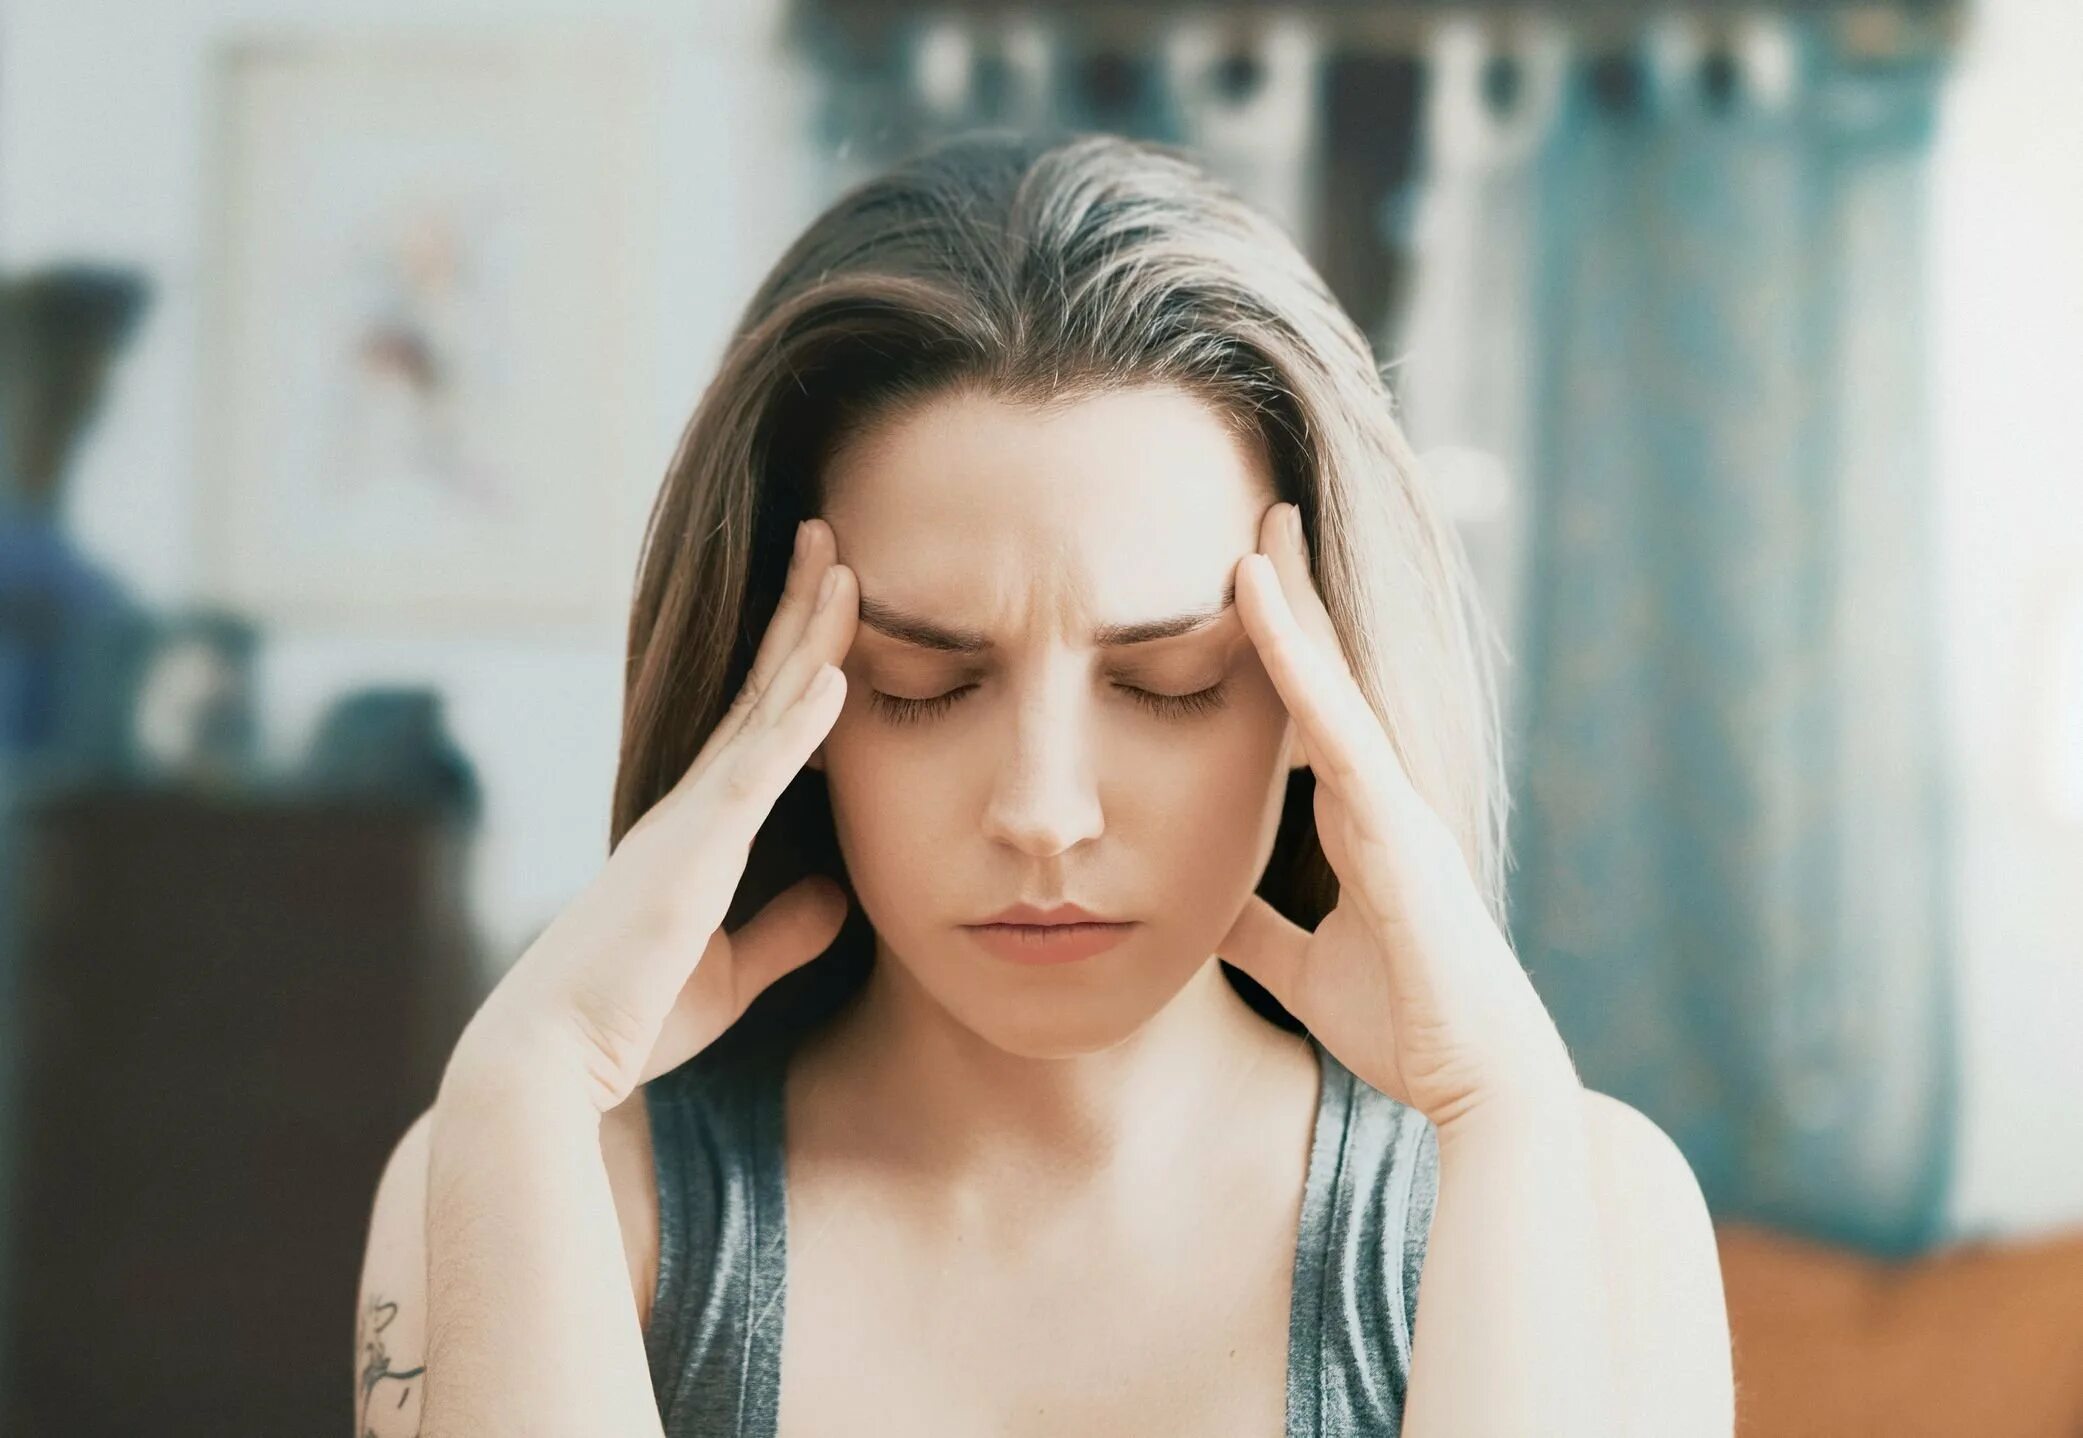 Страх стеснения. Женщина в стрессе. Болит голова. Стресс паника. Лицо женщины в стрессе.